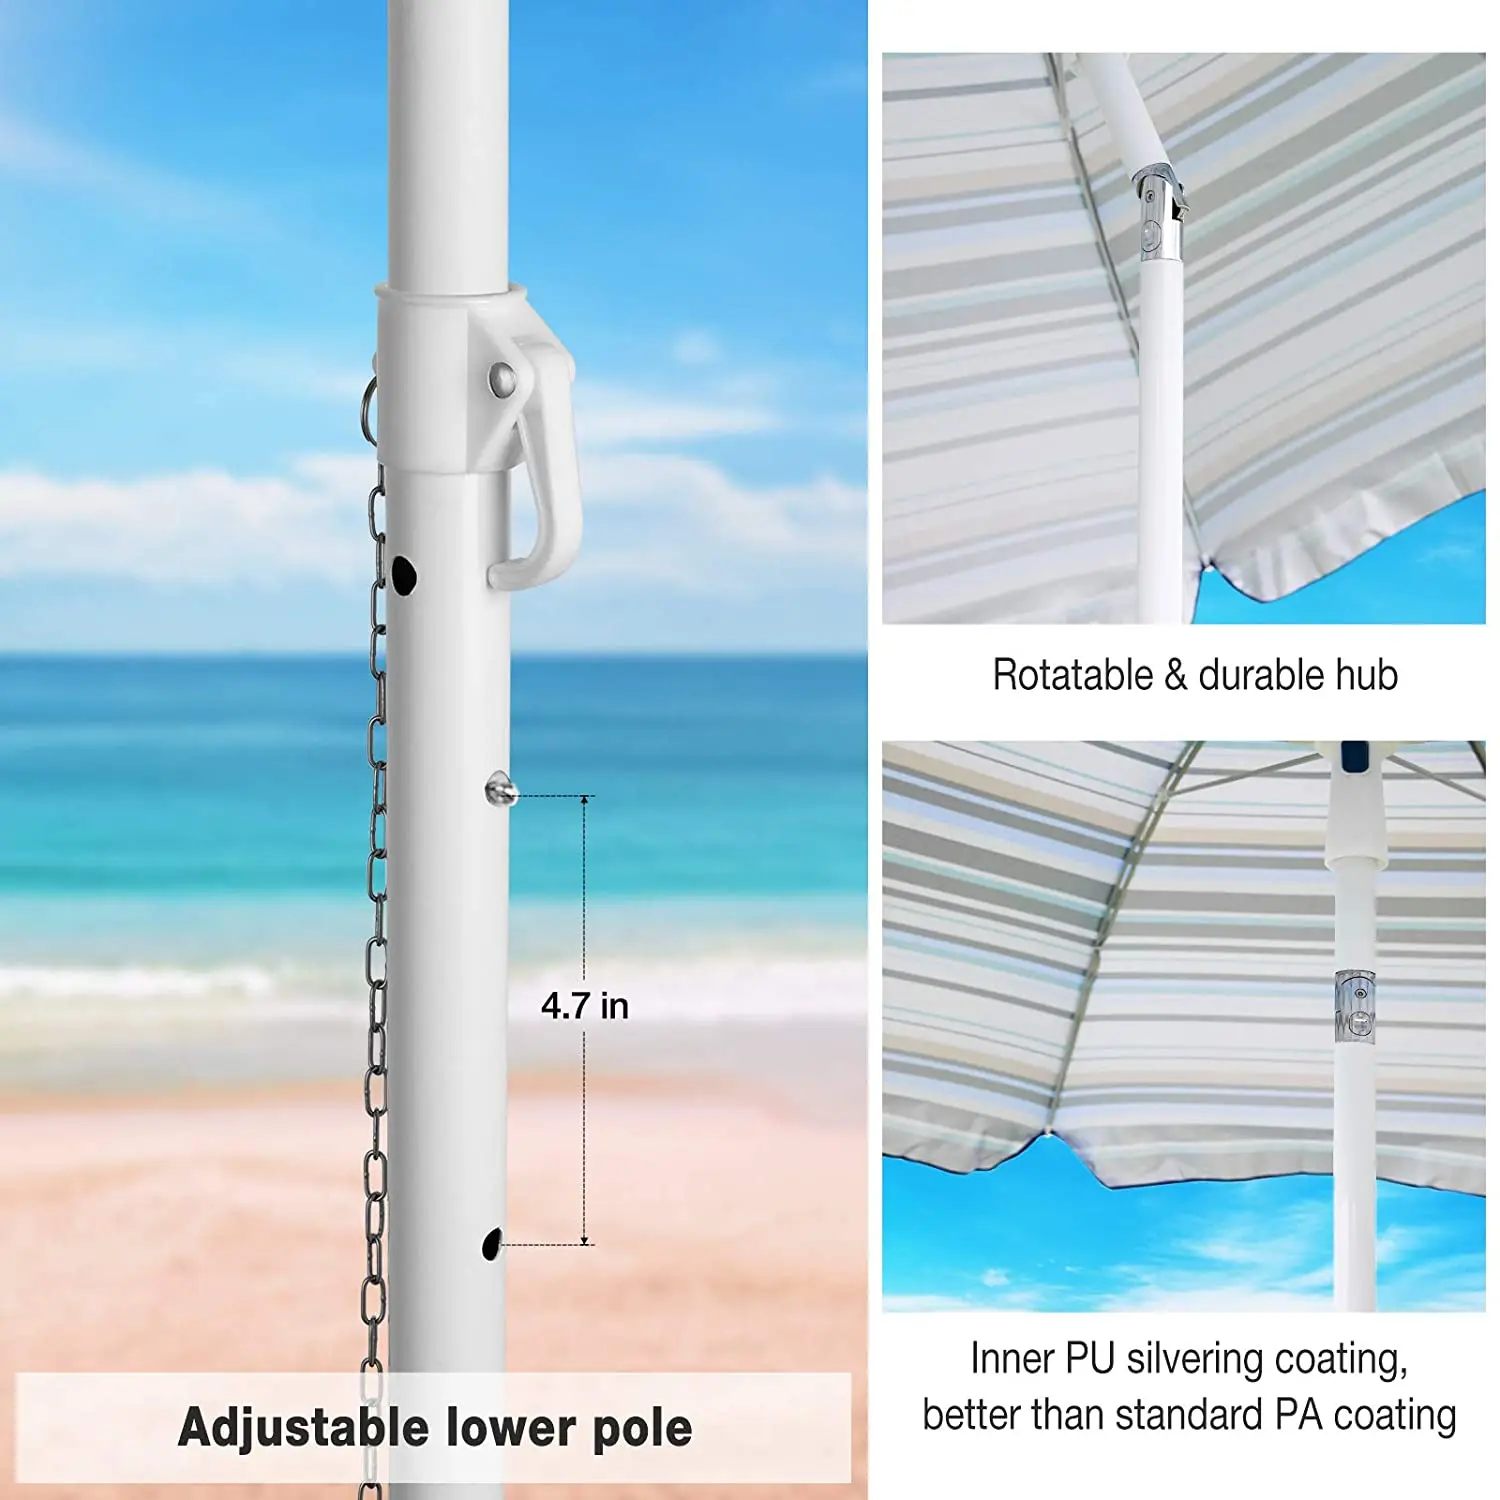 Открытый пляжный зонт с мешком из песка 6.5ft пляжный зонт с якорем из песка UPF 50 + полиуретановое покрытие с сумкой для переноски темно-синие полосы